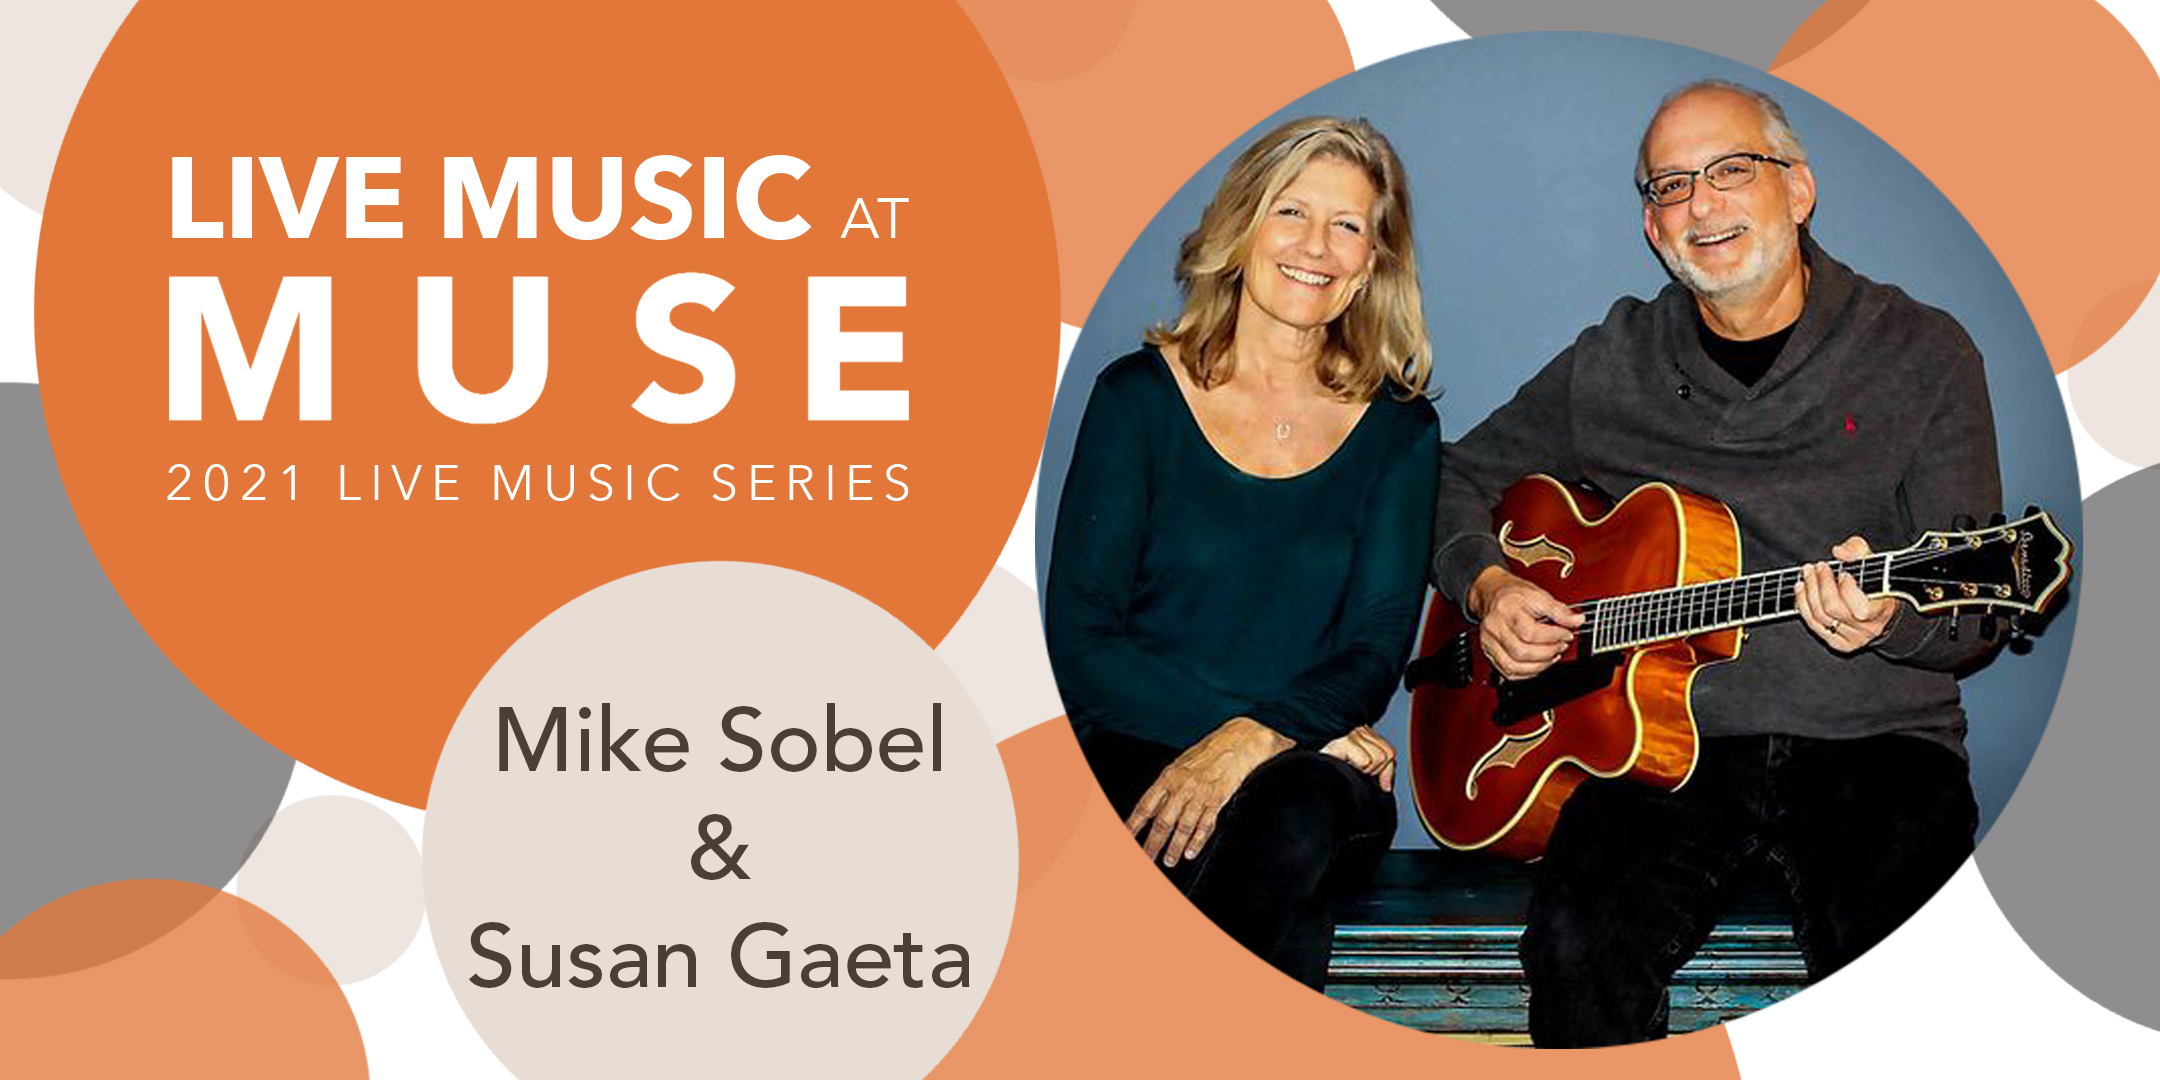 Mike Sobel & Susan Gaeta